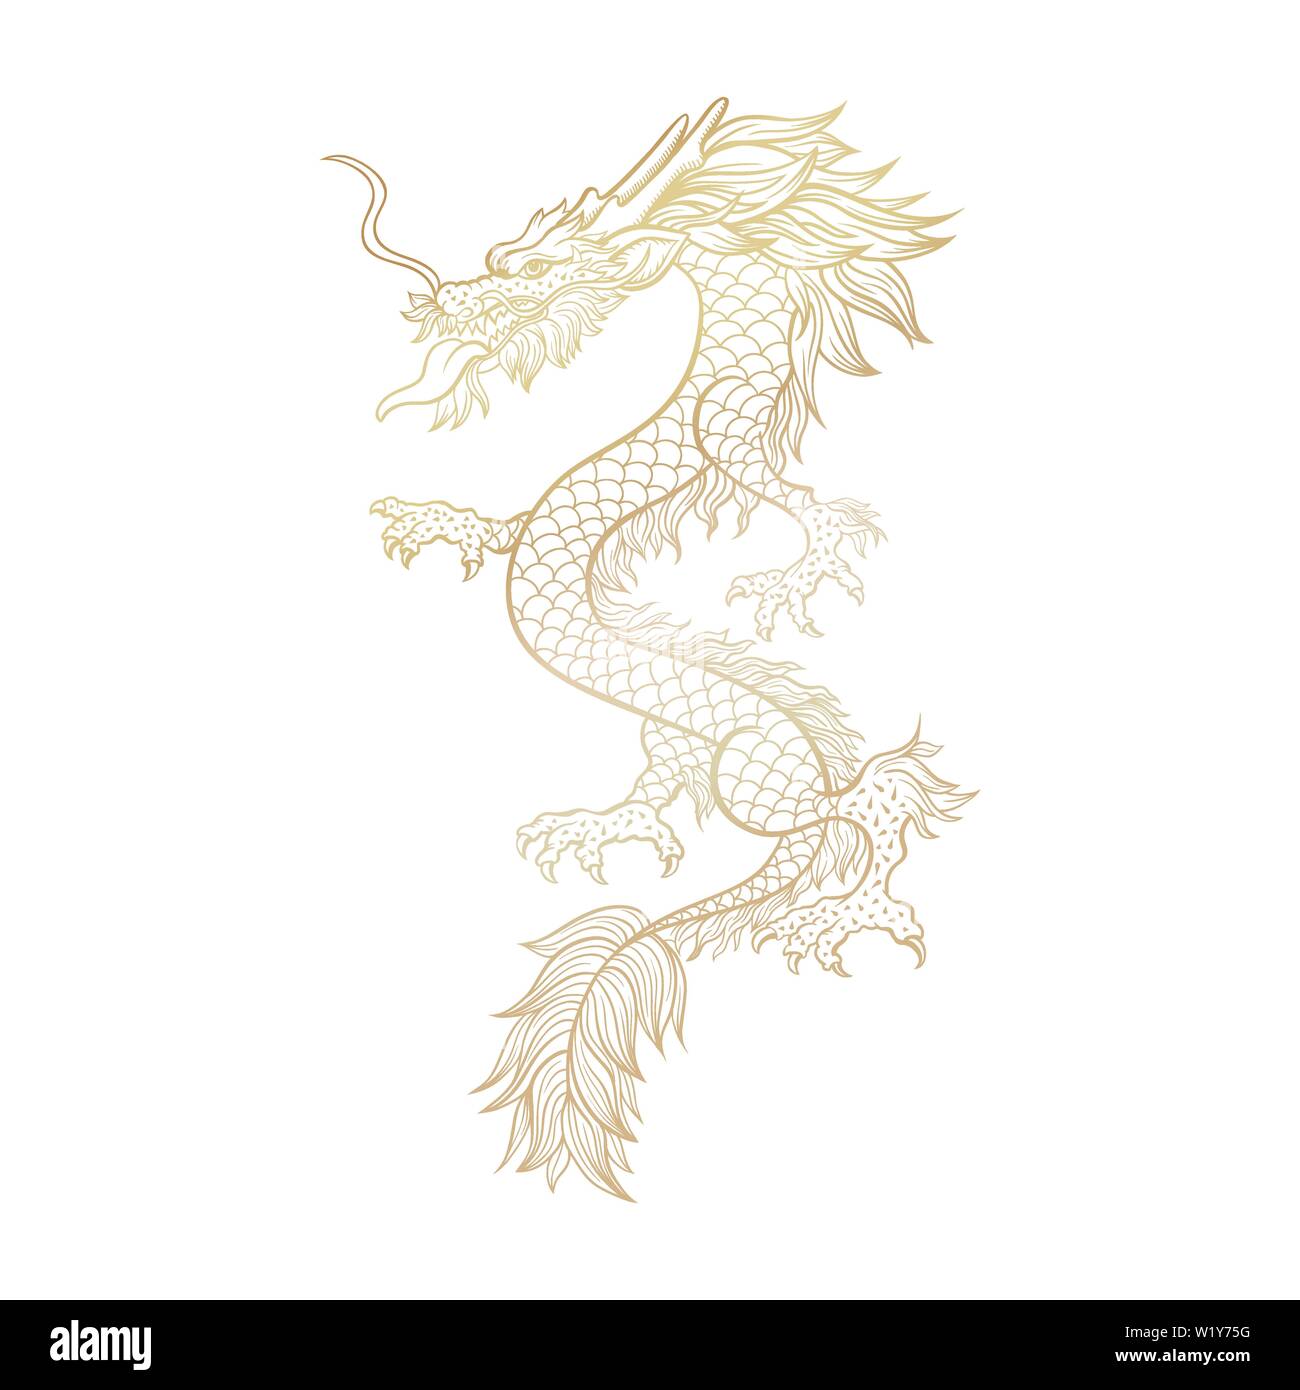 Golden cinese drago mitico laser cut file per plotter. Il leggendario oriental personaggio mitologico su sfondo bianco. Asian cerimoniale di serpente nel minacciare pongono. Verticale disegnata a mano illustrazione. Illustrazione Vettoriale